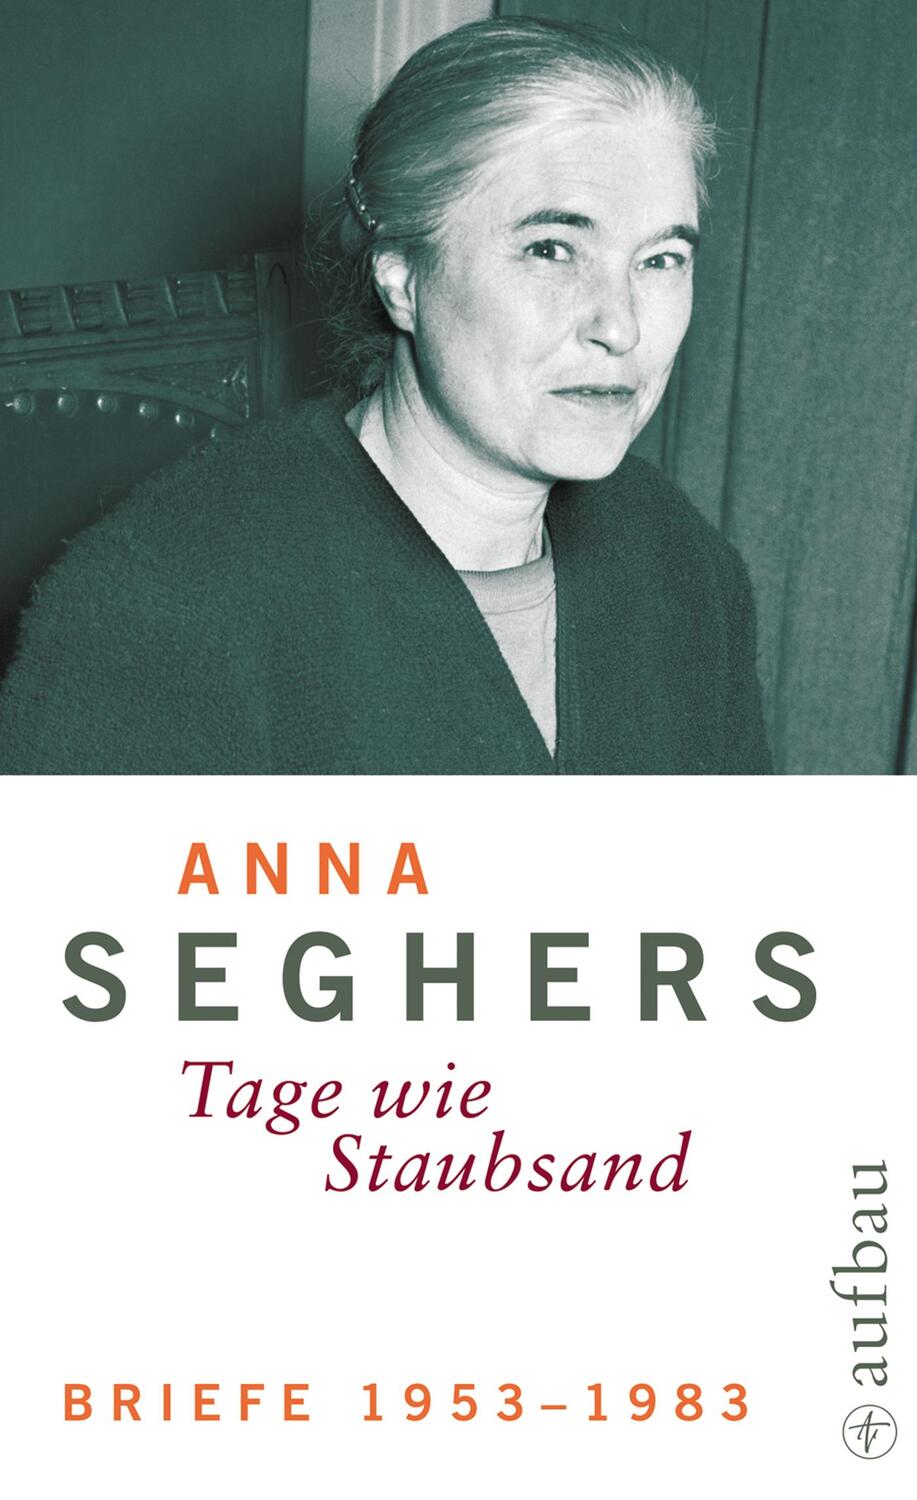 Briefe 1953-1983 - Seghers, Anna